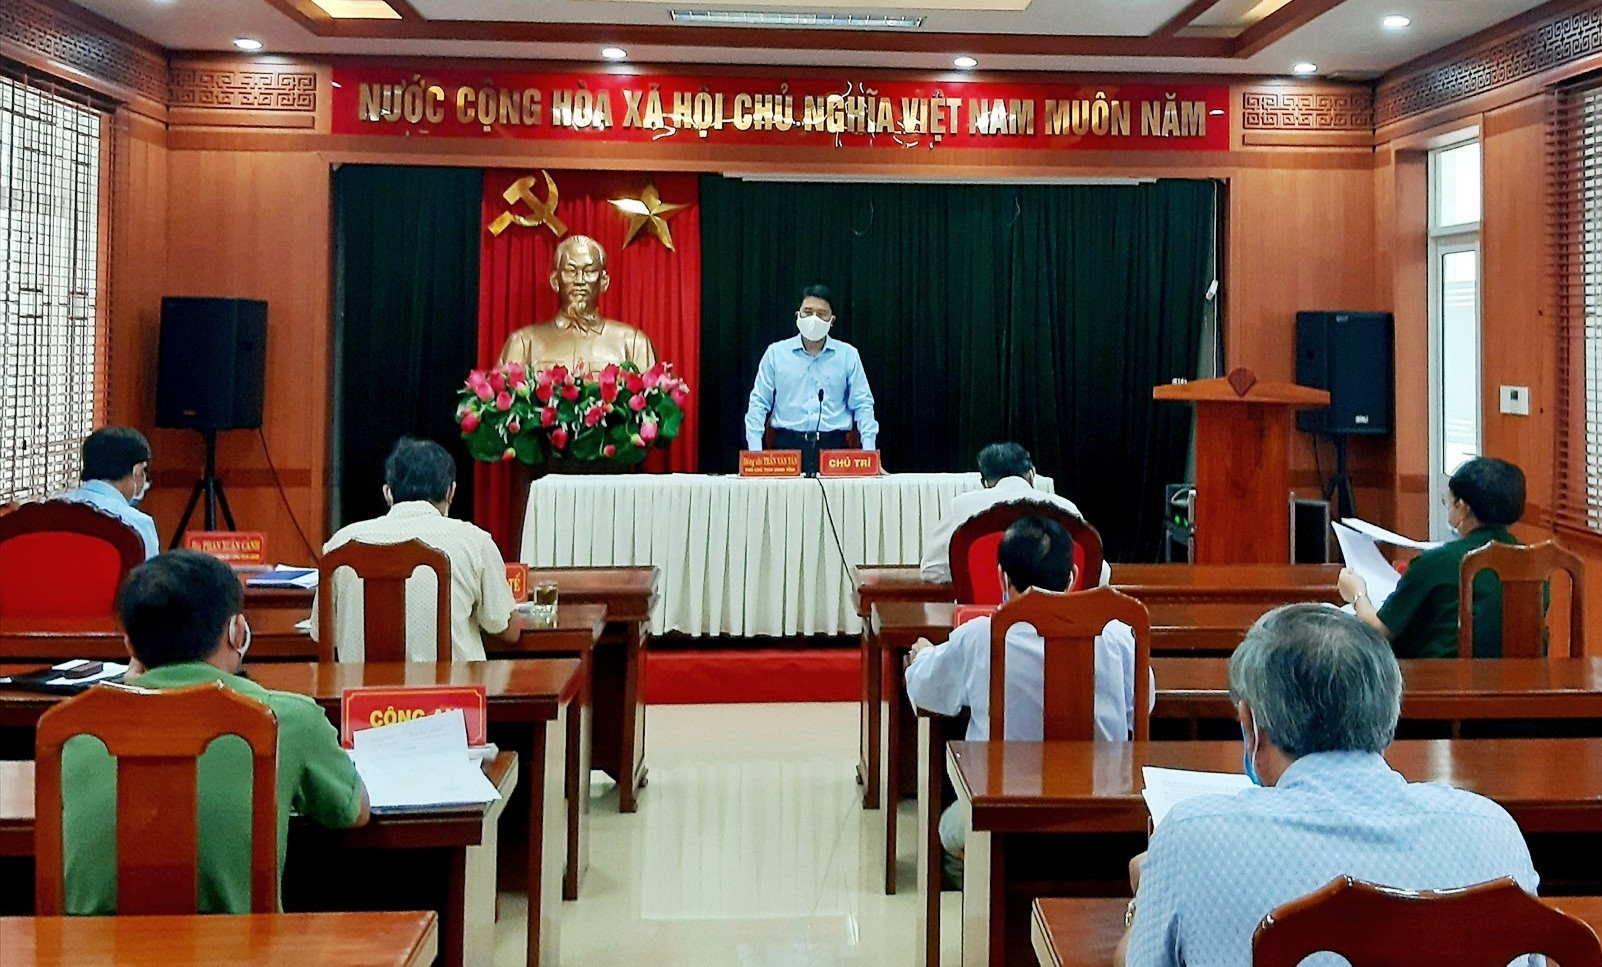 Phó Chủ tịch UBND tỉnh Trần Văn Tân phát biểu chỉ đạo tại cuộc làm việc với lãnh đạo huyện Duy Xuyên vào sáng nay 4.8. Ảnh: T.S